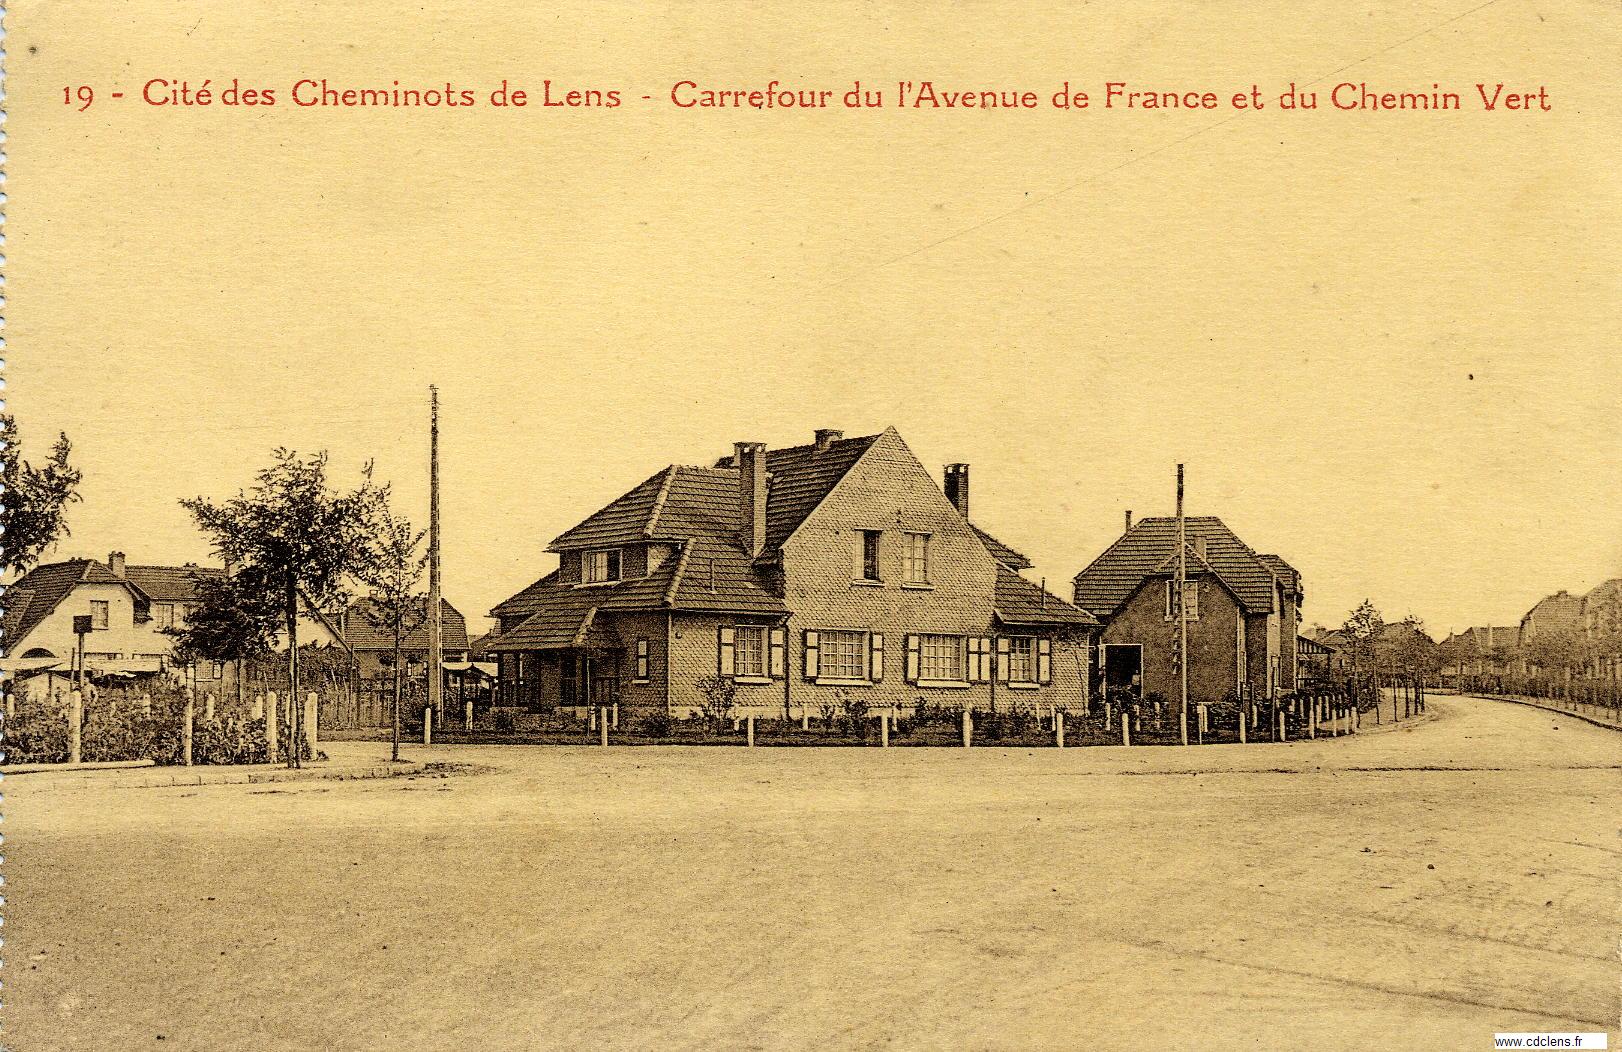 Carrefour Avenue de France et du Chemin vert